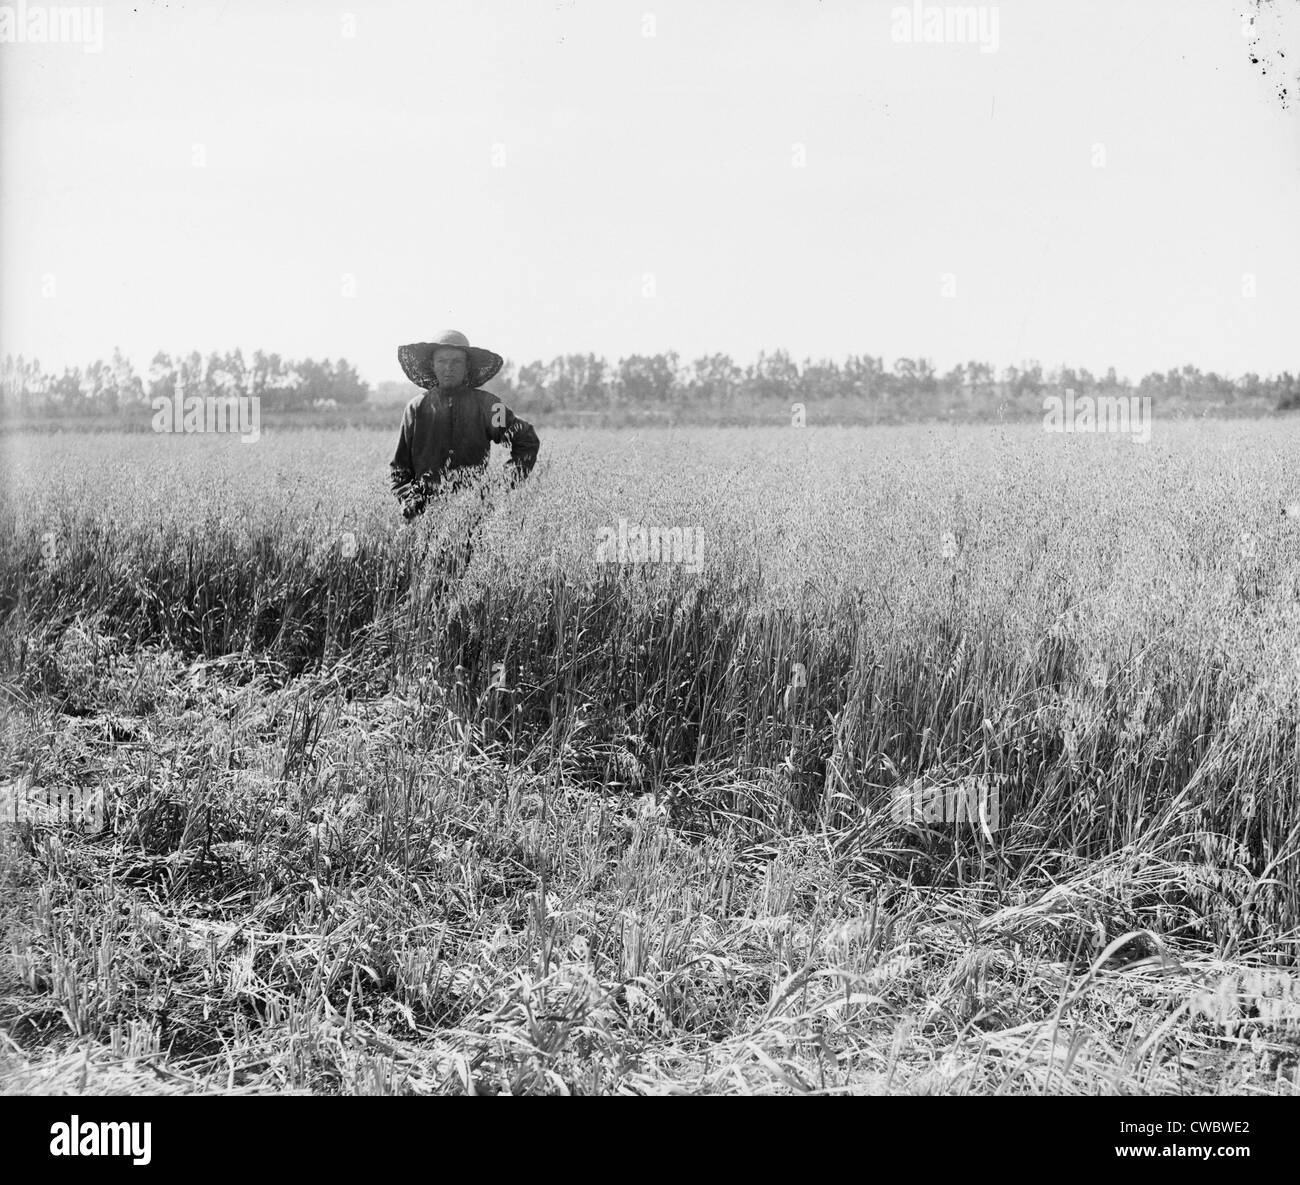 Retrato de un colono judío en un campo de grano madura en un kibbutz. Palestina, ca. 1920-39. Foto de stock